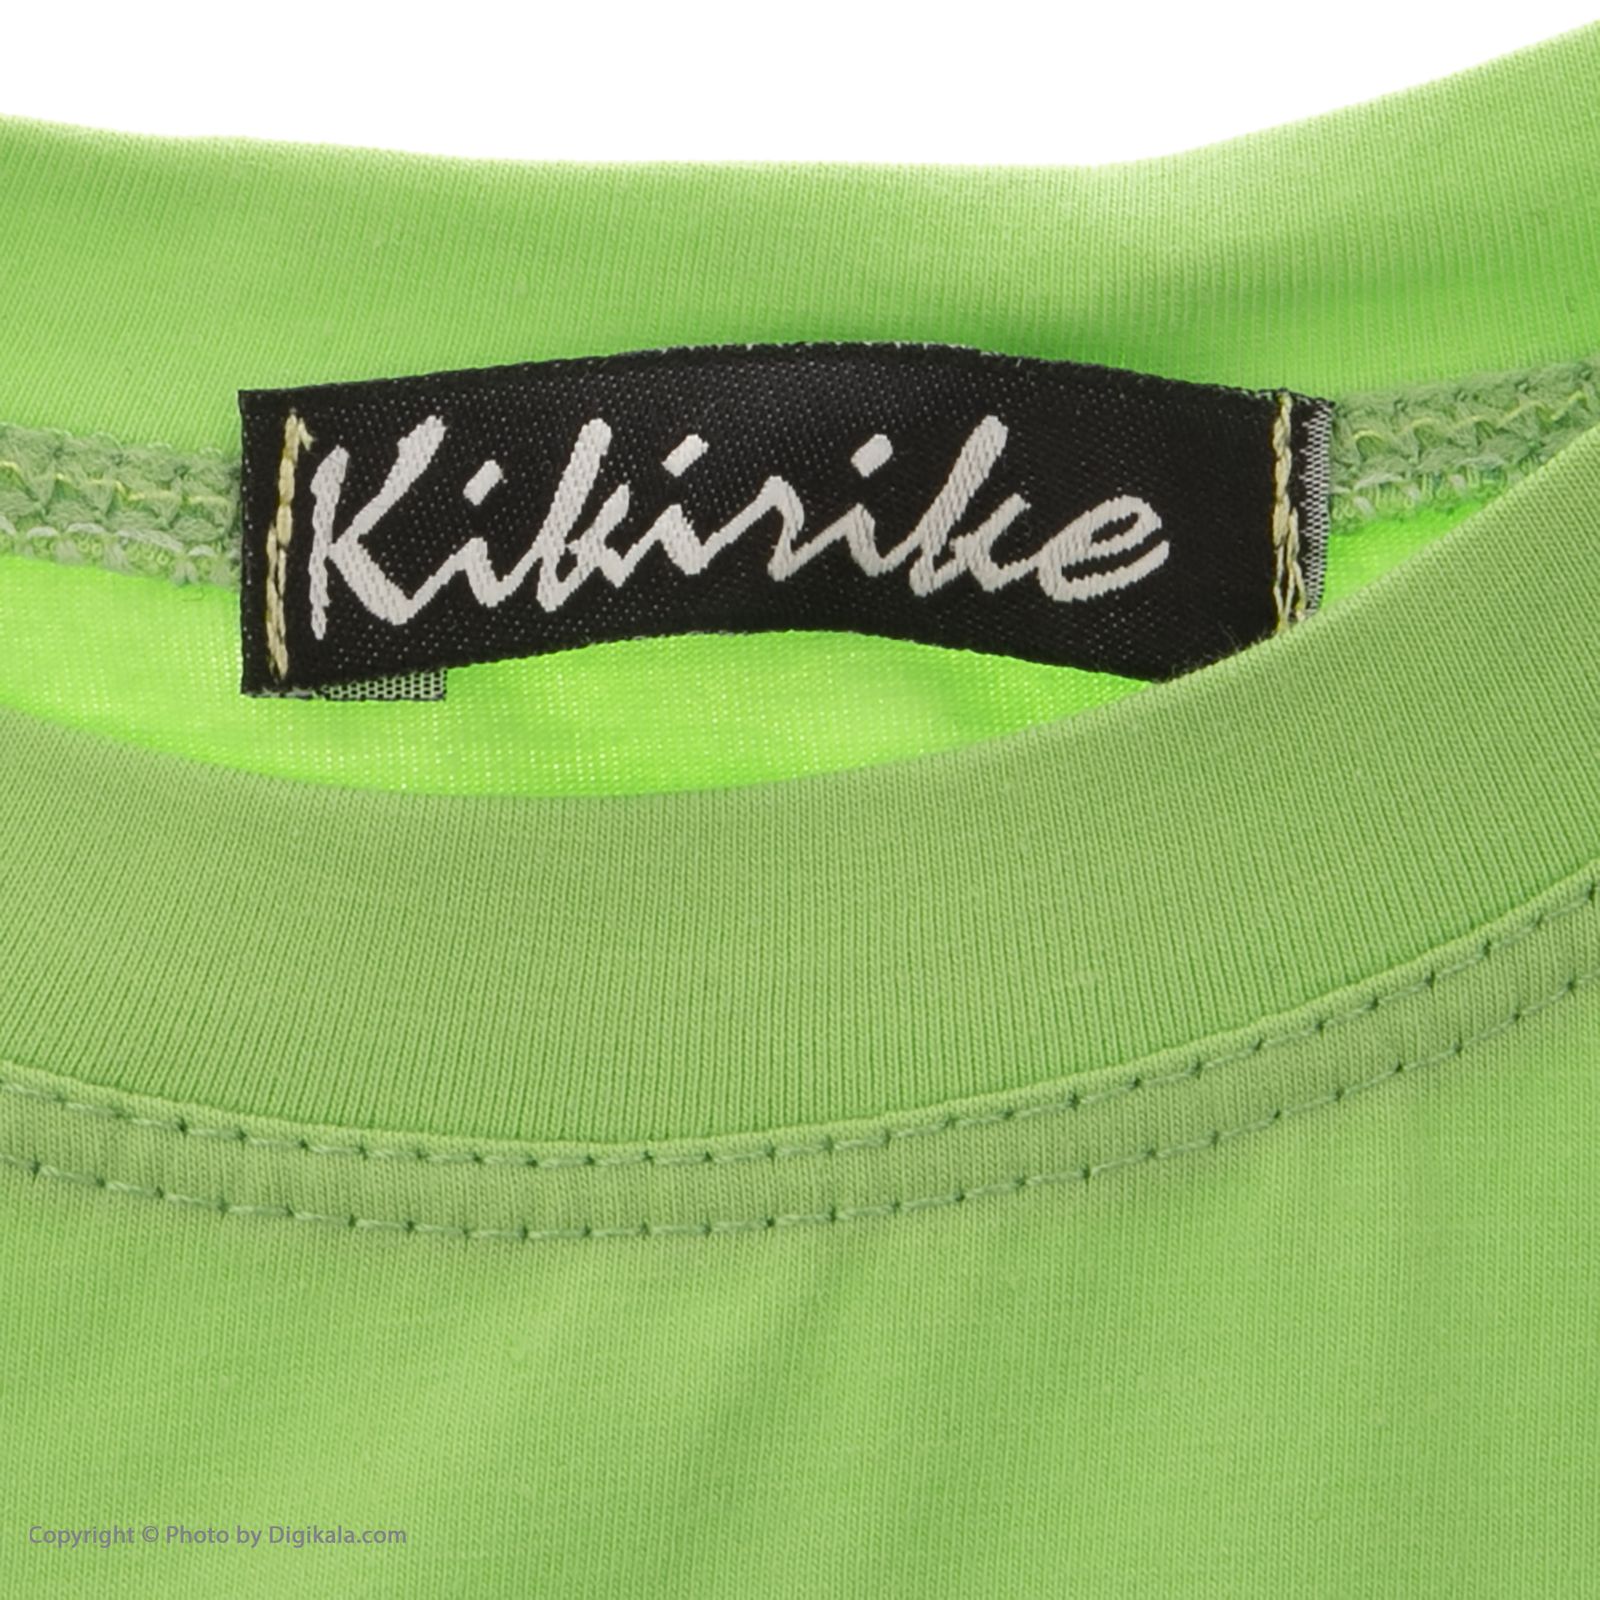 تی شرت دخترانه کیکی رایکی مدل KBB02813-008 -  - 3